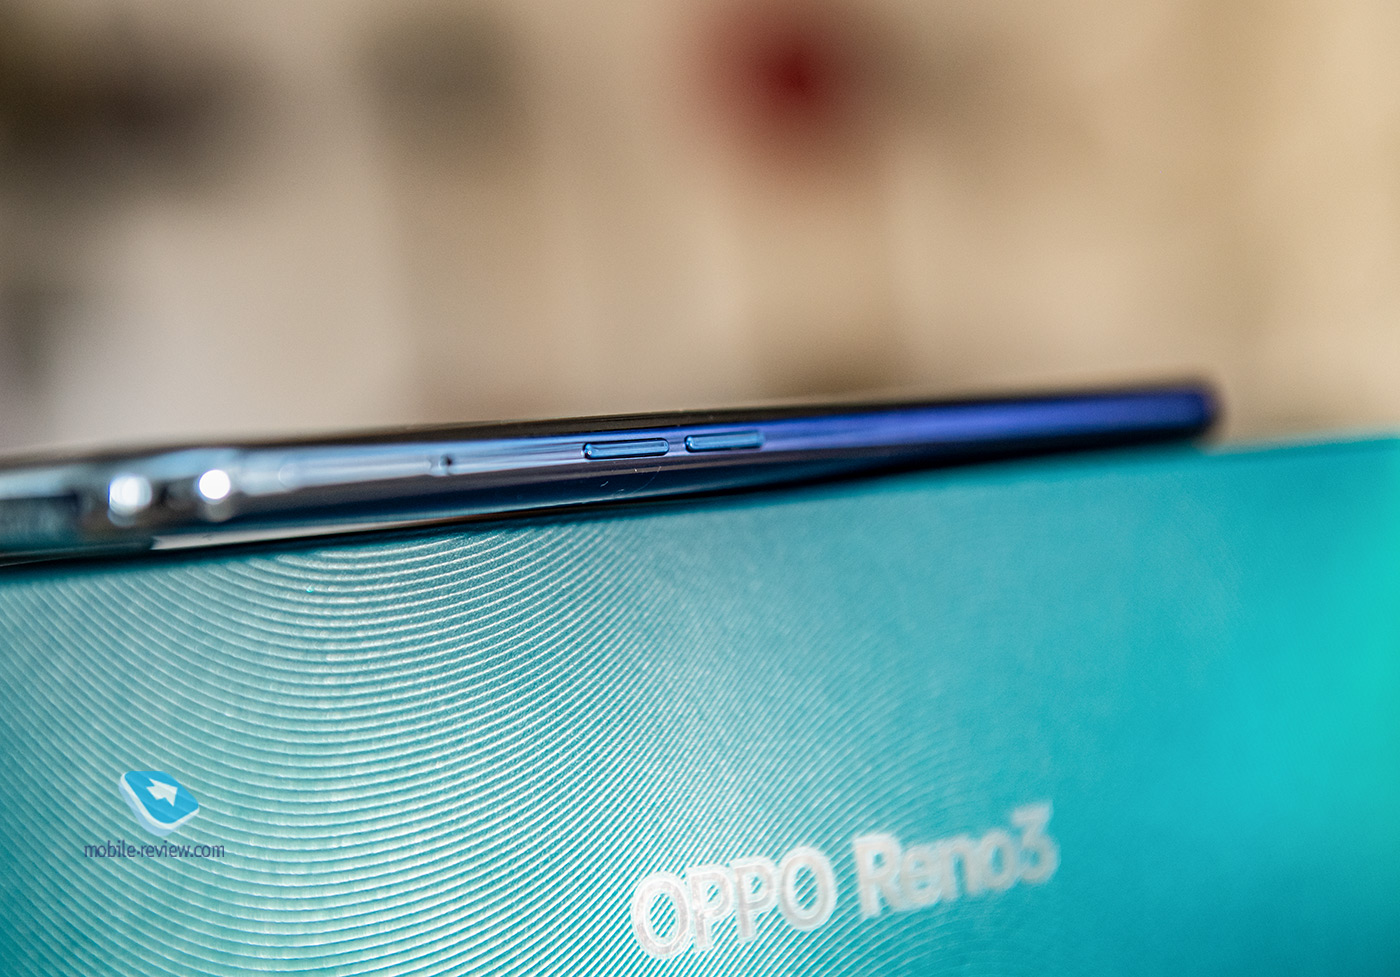 Oppo Reno3 (CPH2043) smartphone review